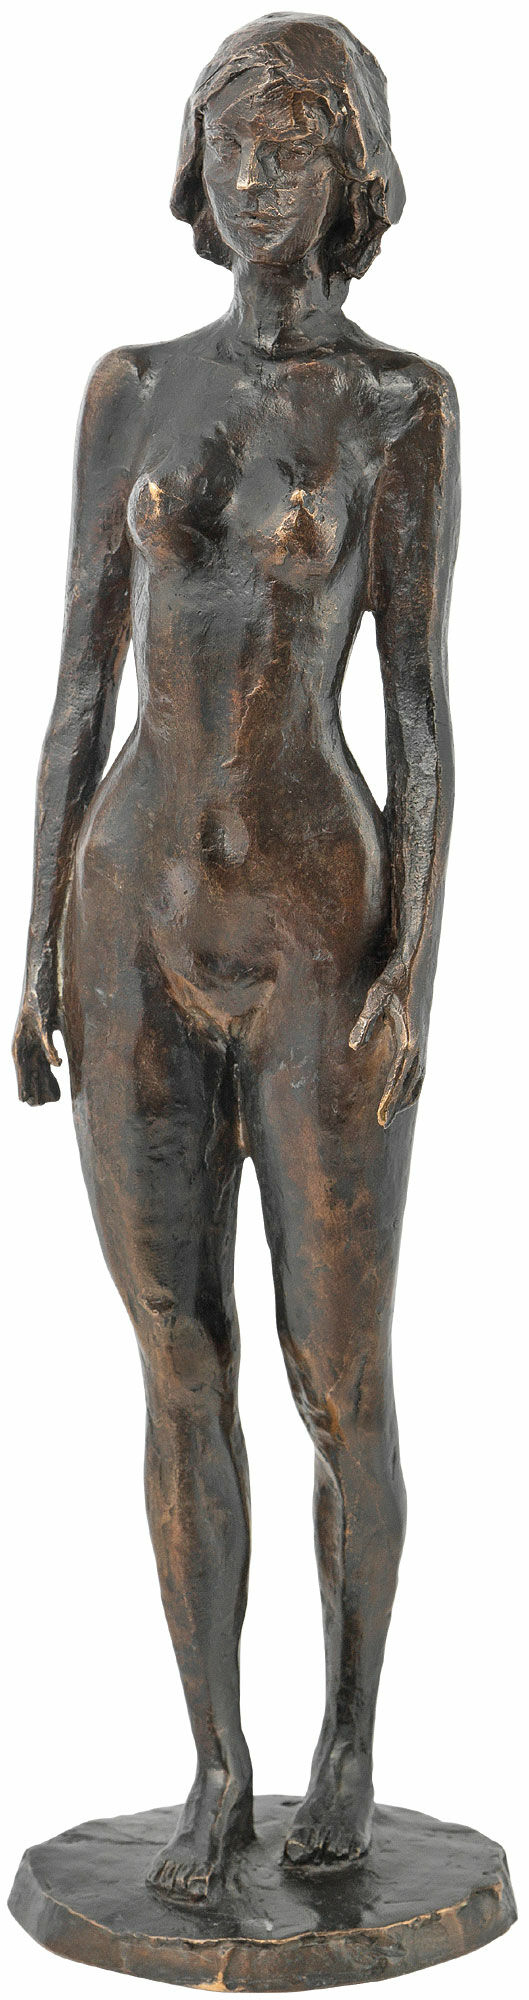 Skulptur "Parfume" (2014), bronze von Serge Mangin